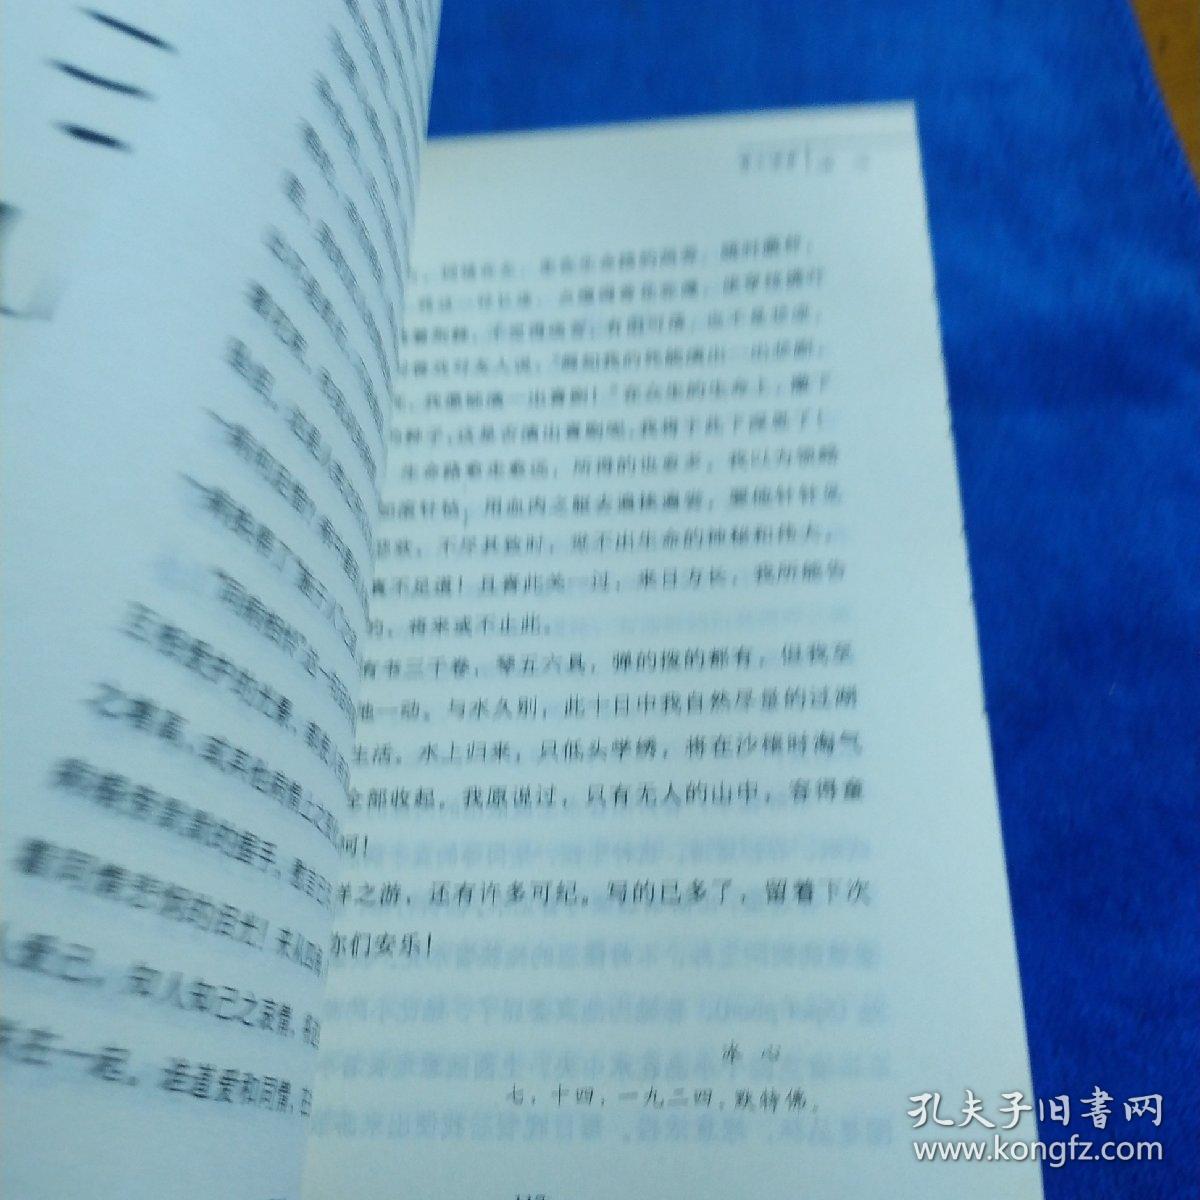 百年百部中国儿童文学经典书系：寄小读者（多本合并一本运费，提交后等改完运费再付款）